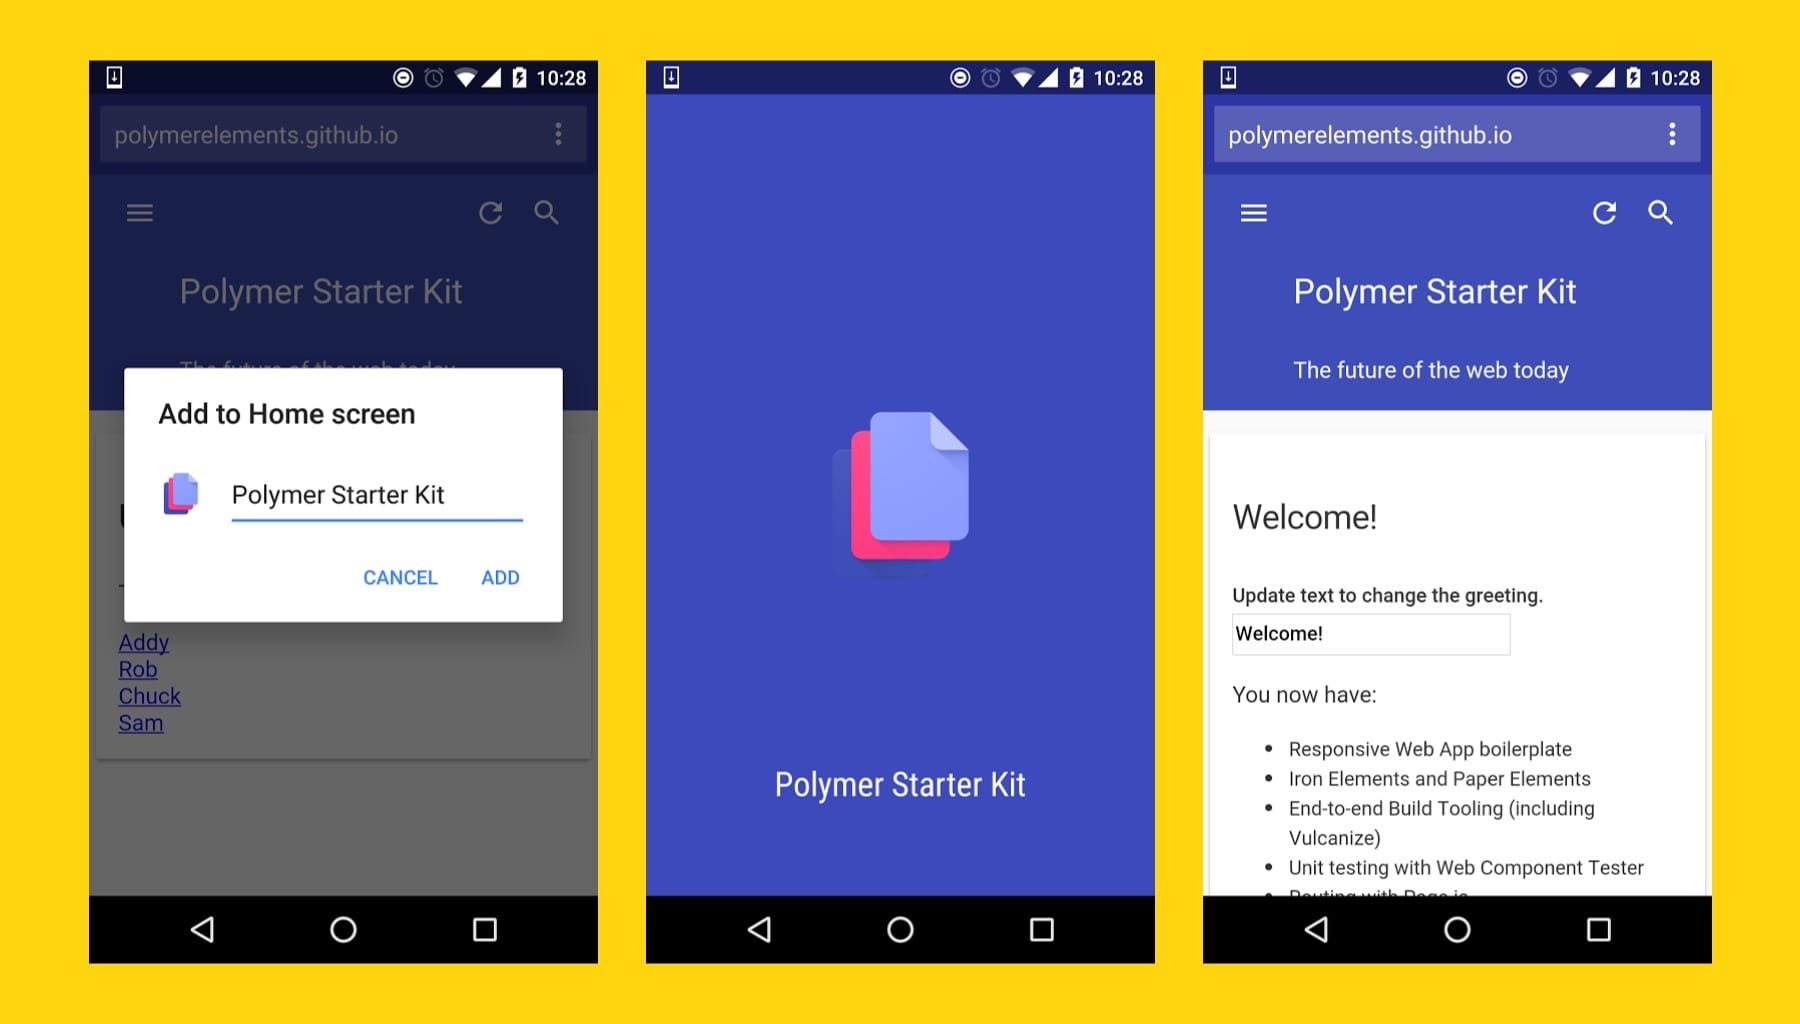 Polymer Starter Kit en el que se muestran las funciones integradas de la app web progresiva